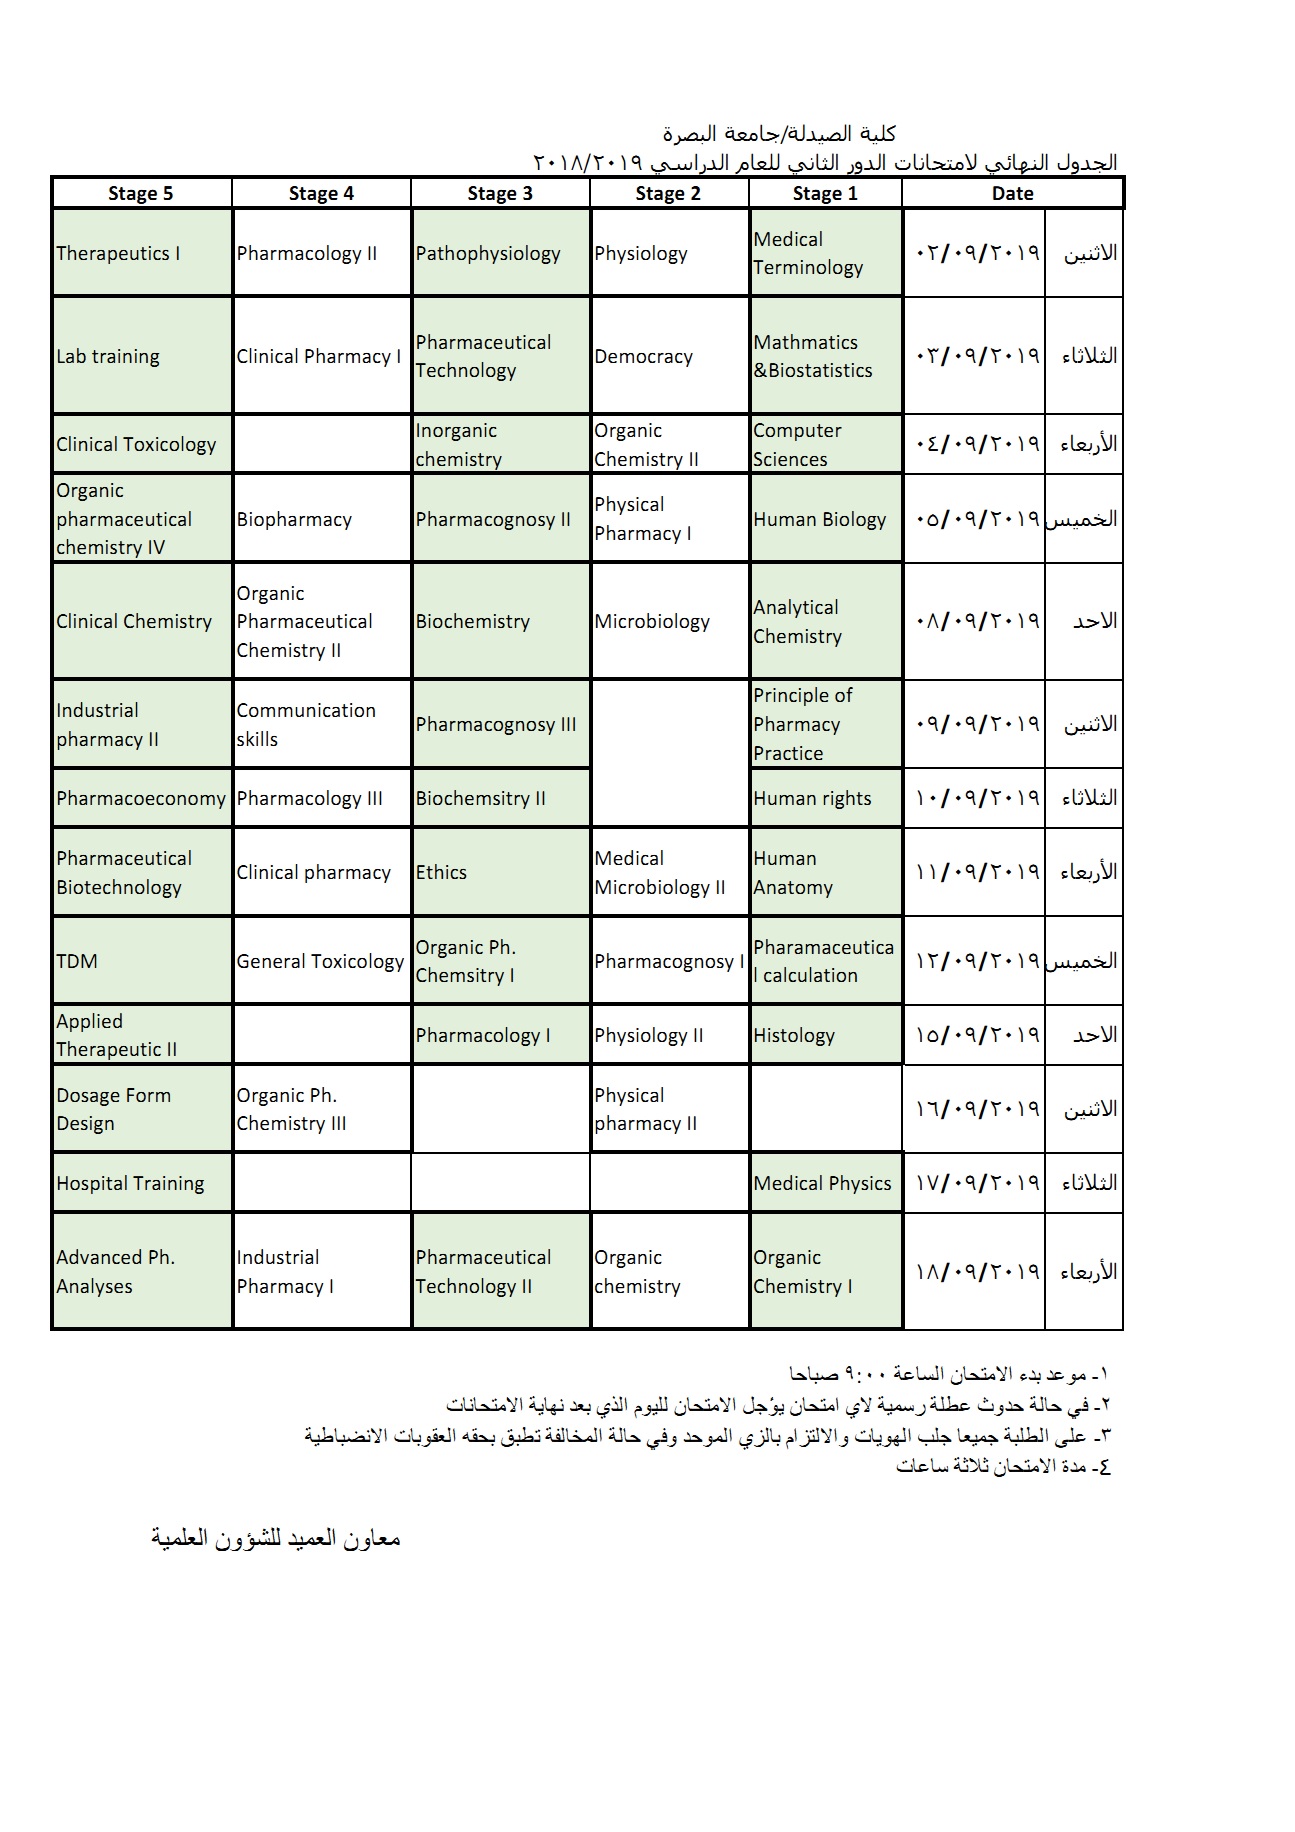 جدول امتحانات الدور الثاني للعام 2018-2019 بنسخته النهائية لكلية الصيدلة / جامعة البصرة